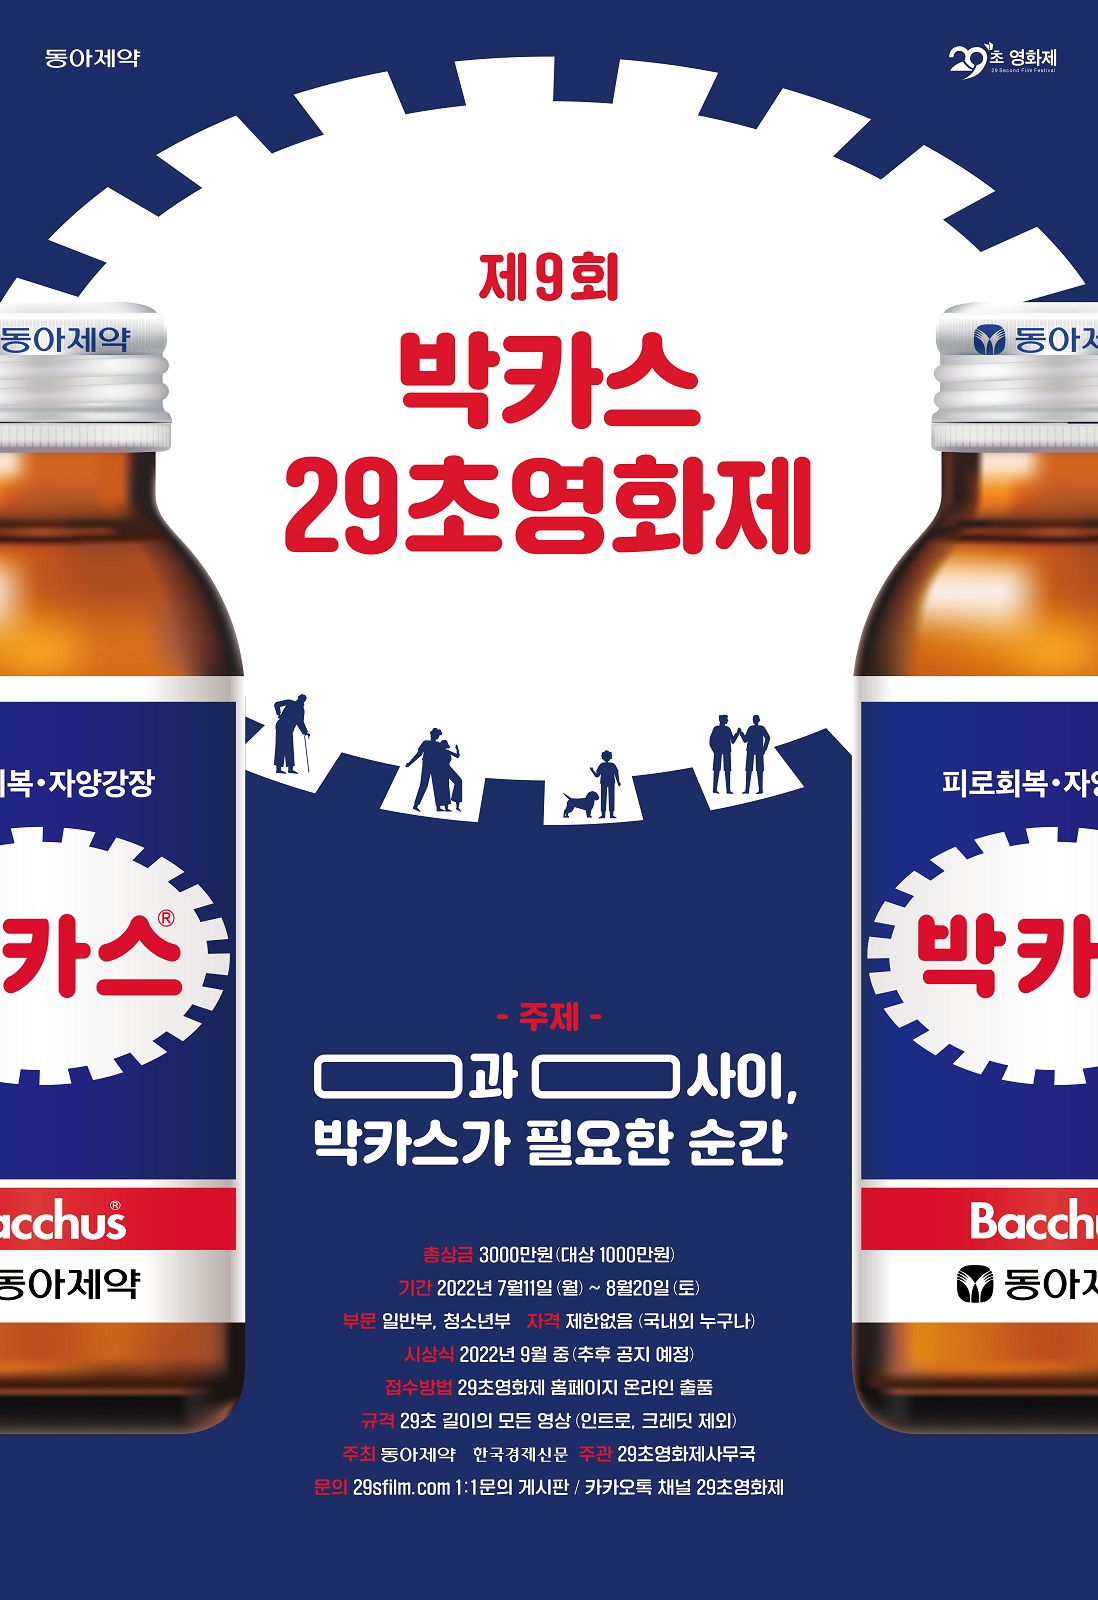 제9회 박카스 29초영화제